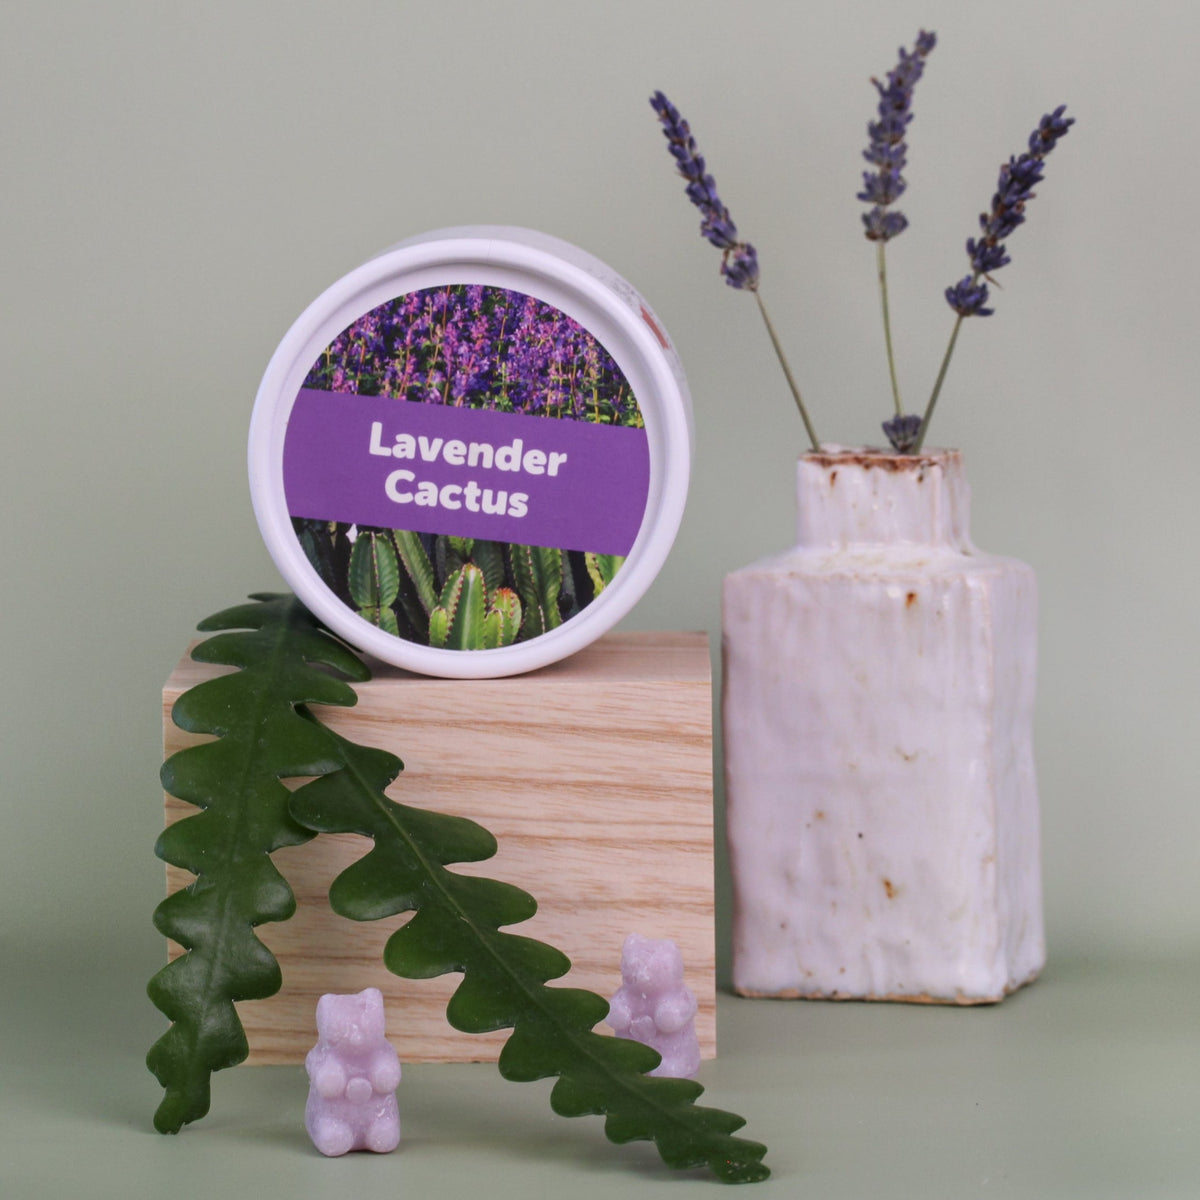 Lavender Cactus Wax Melts